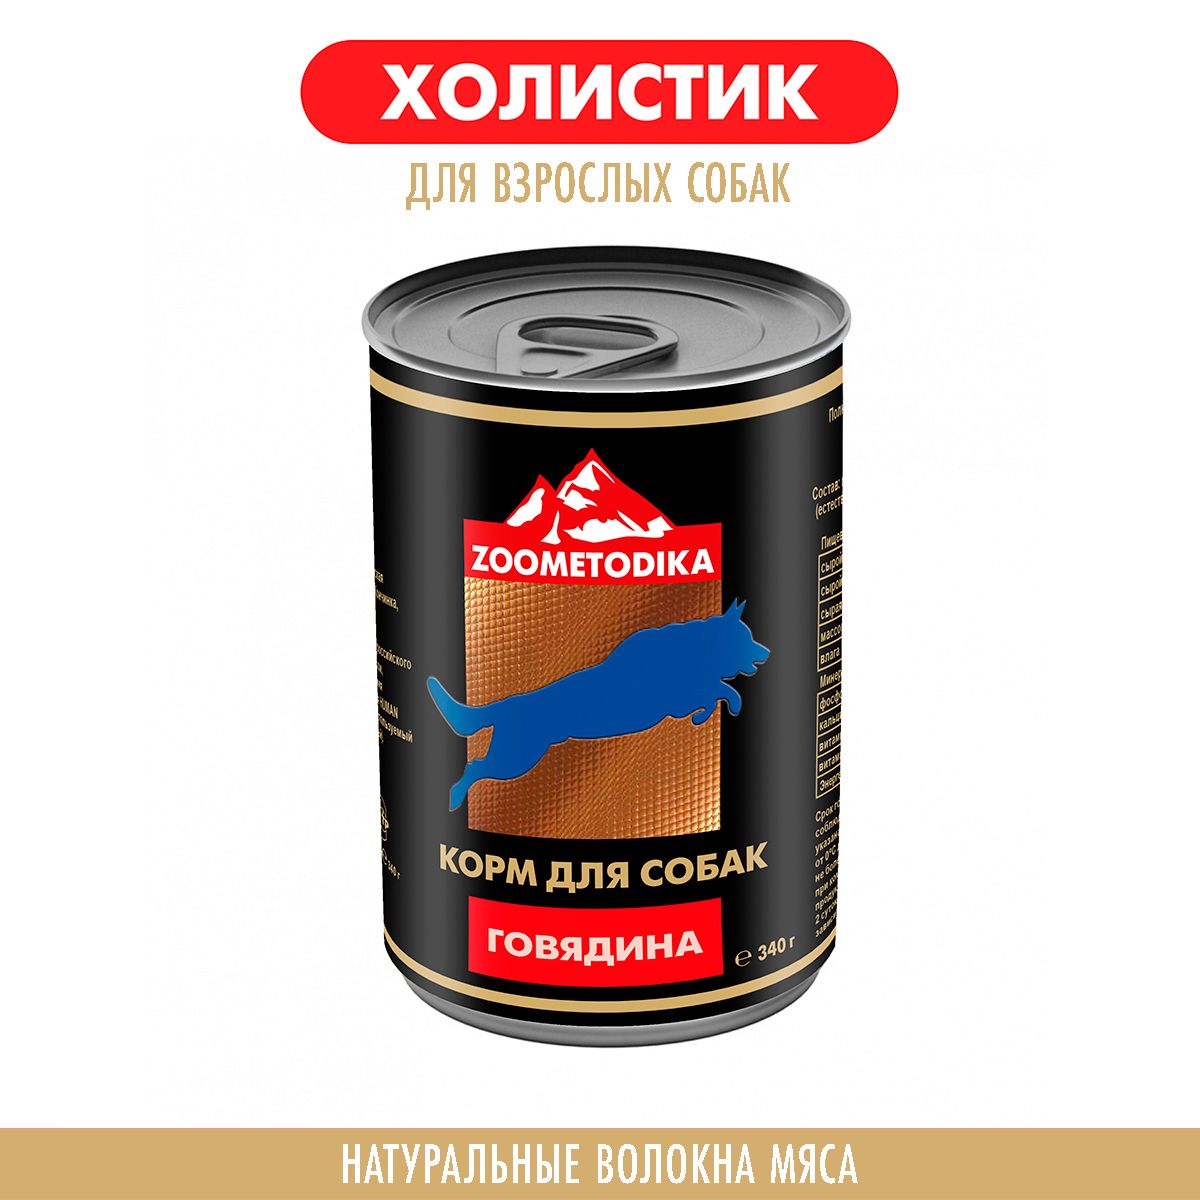 Консервы для собак ZOOMETODIKA холистик, с говядиной, 6 шт по 340 г